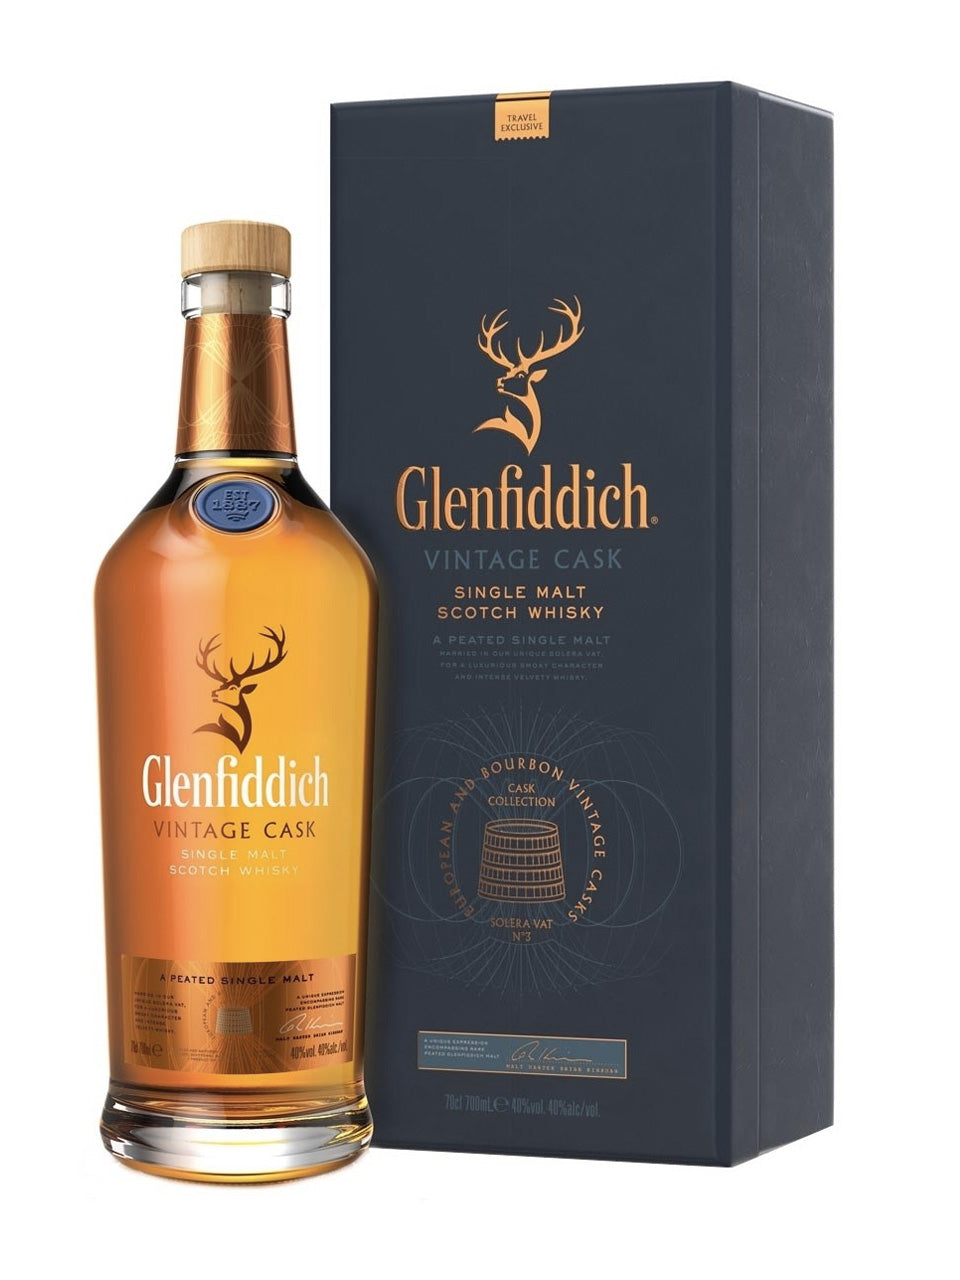 Glenfiddich Cask Collection Vintage Cask Single Malt Scotch Whisky 700mL